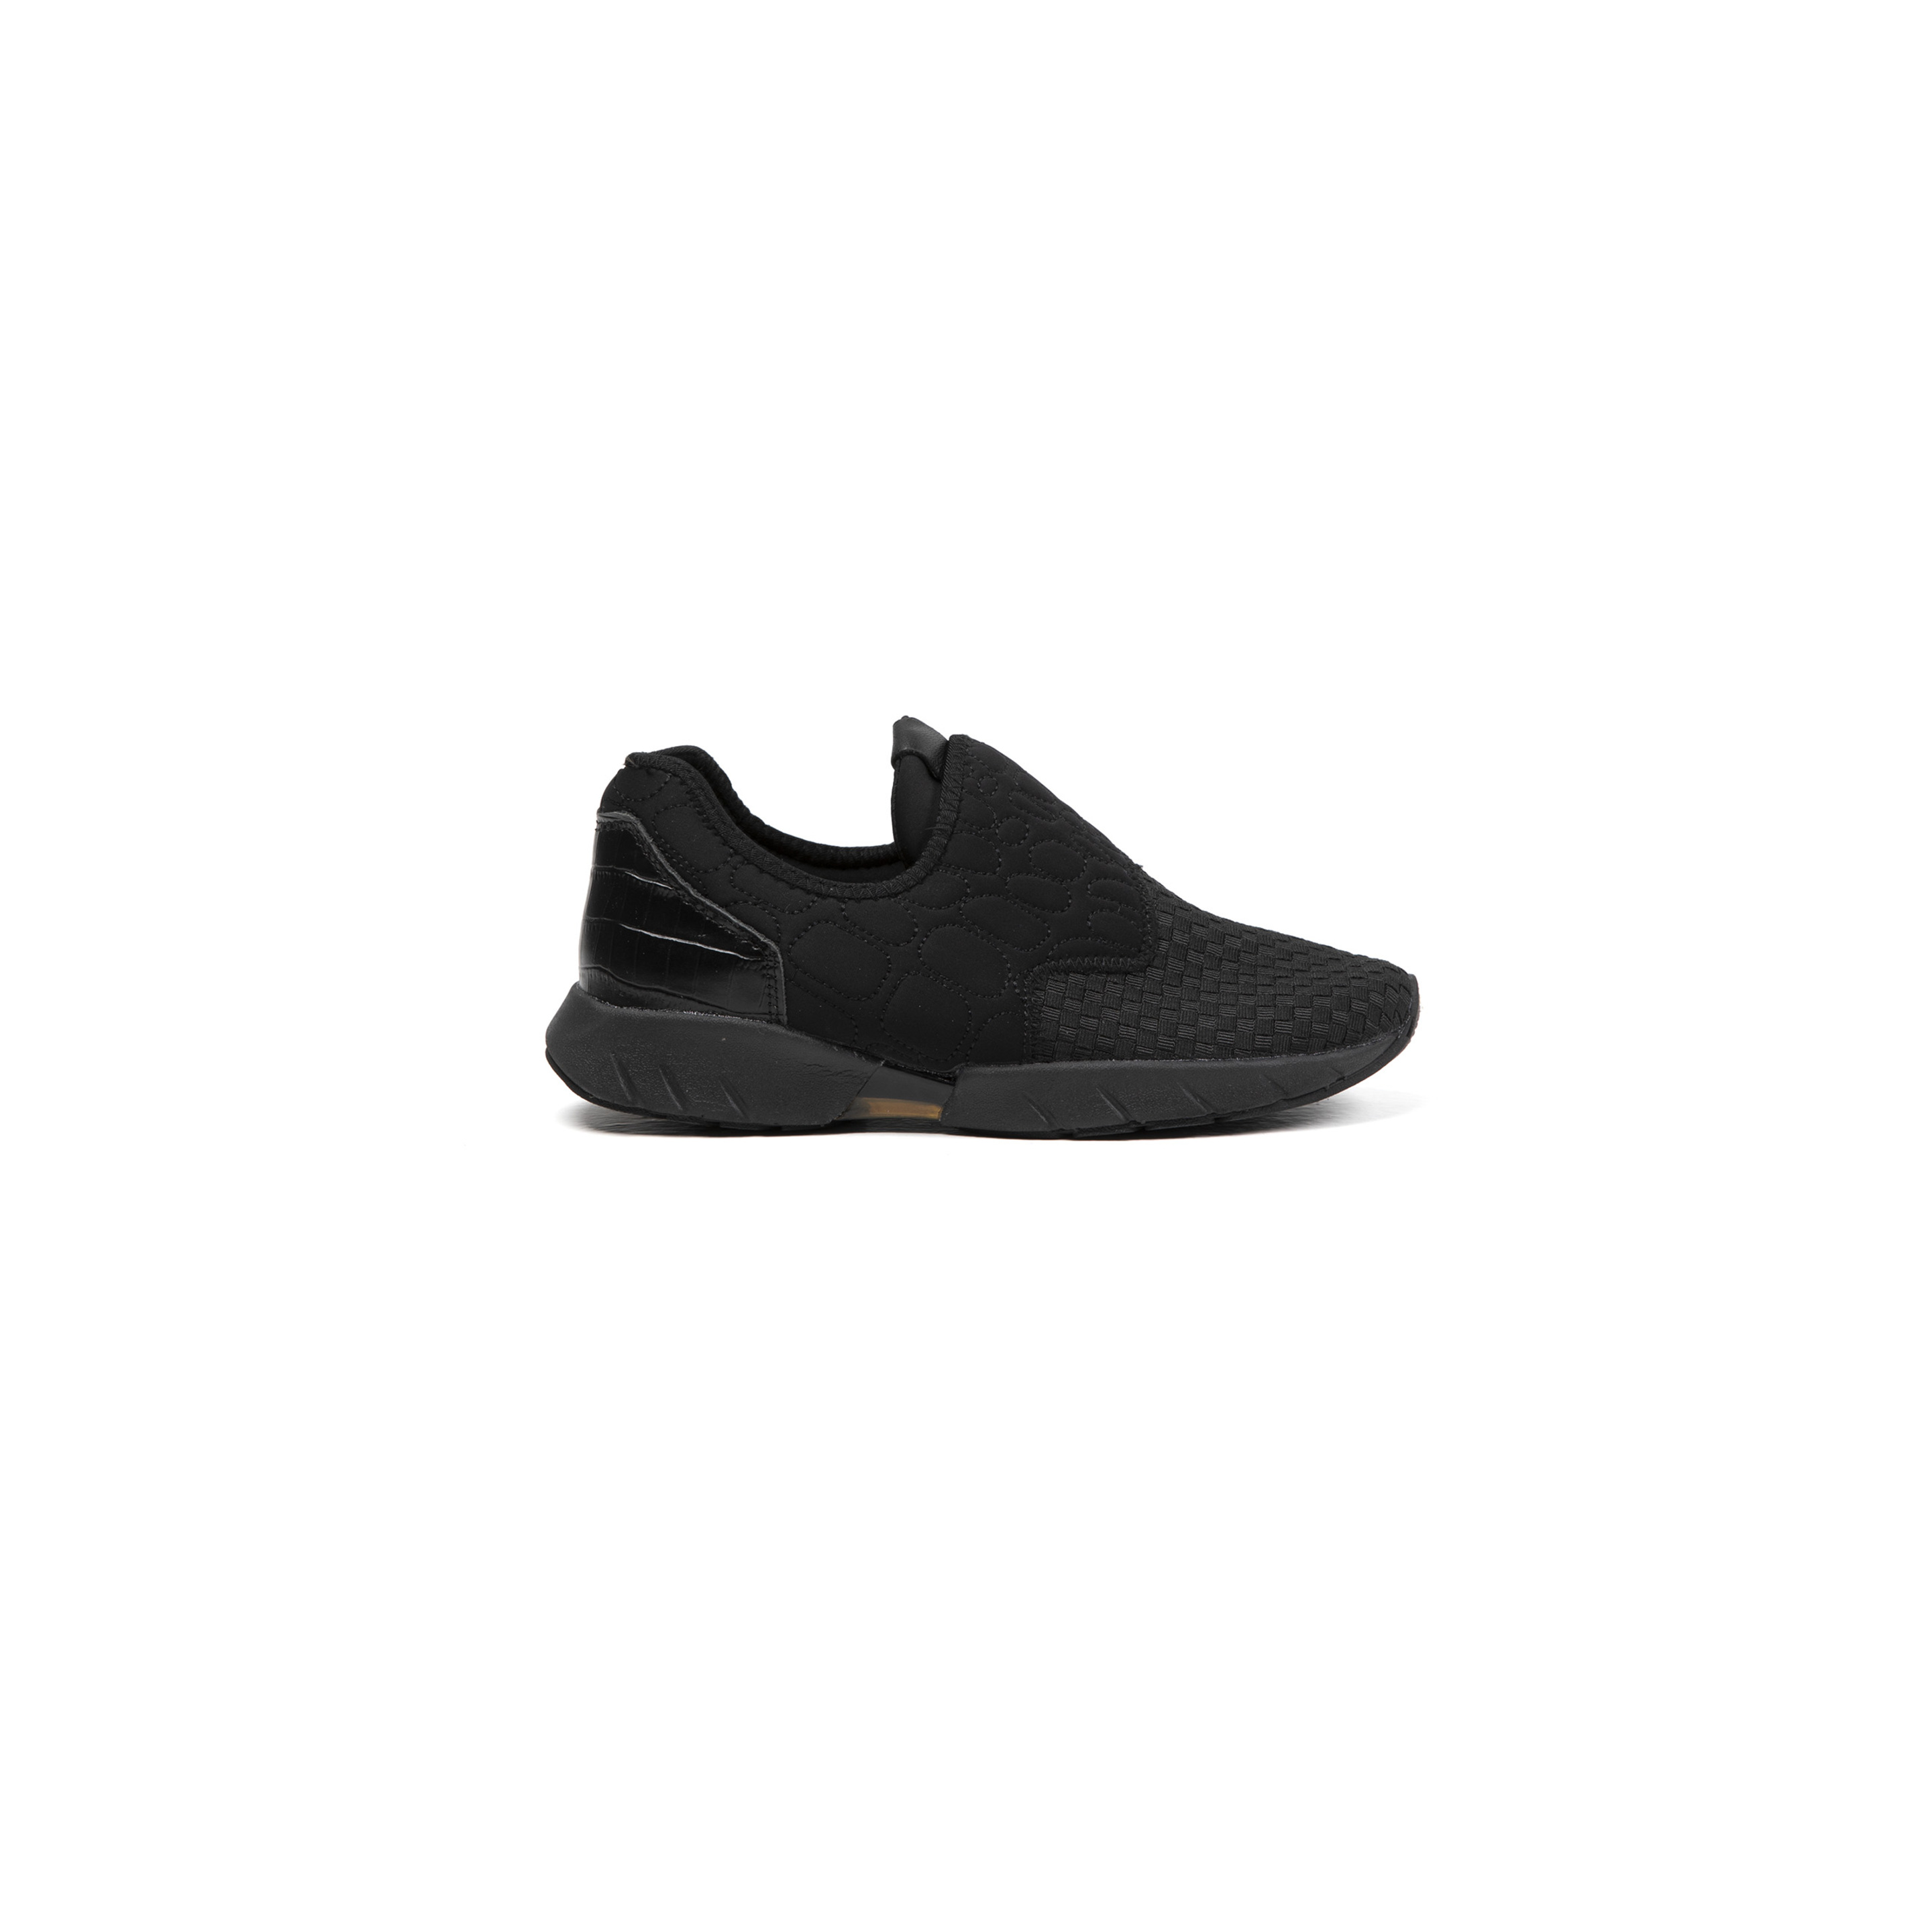 Zapatillas Deportivas De Mujer Bernie Mev De Textil En Negro (talla 35 A 42) - Negro - Sneakers, Zapato Urbano,memory Foam  MKP